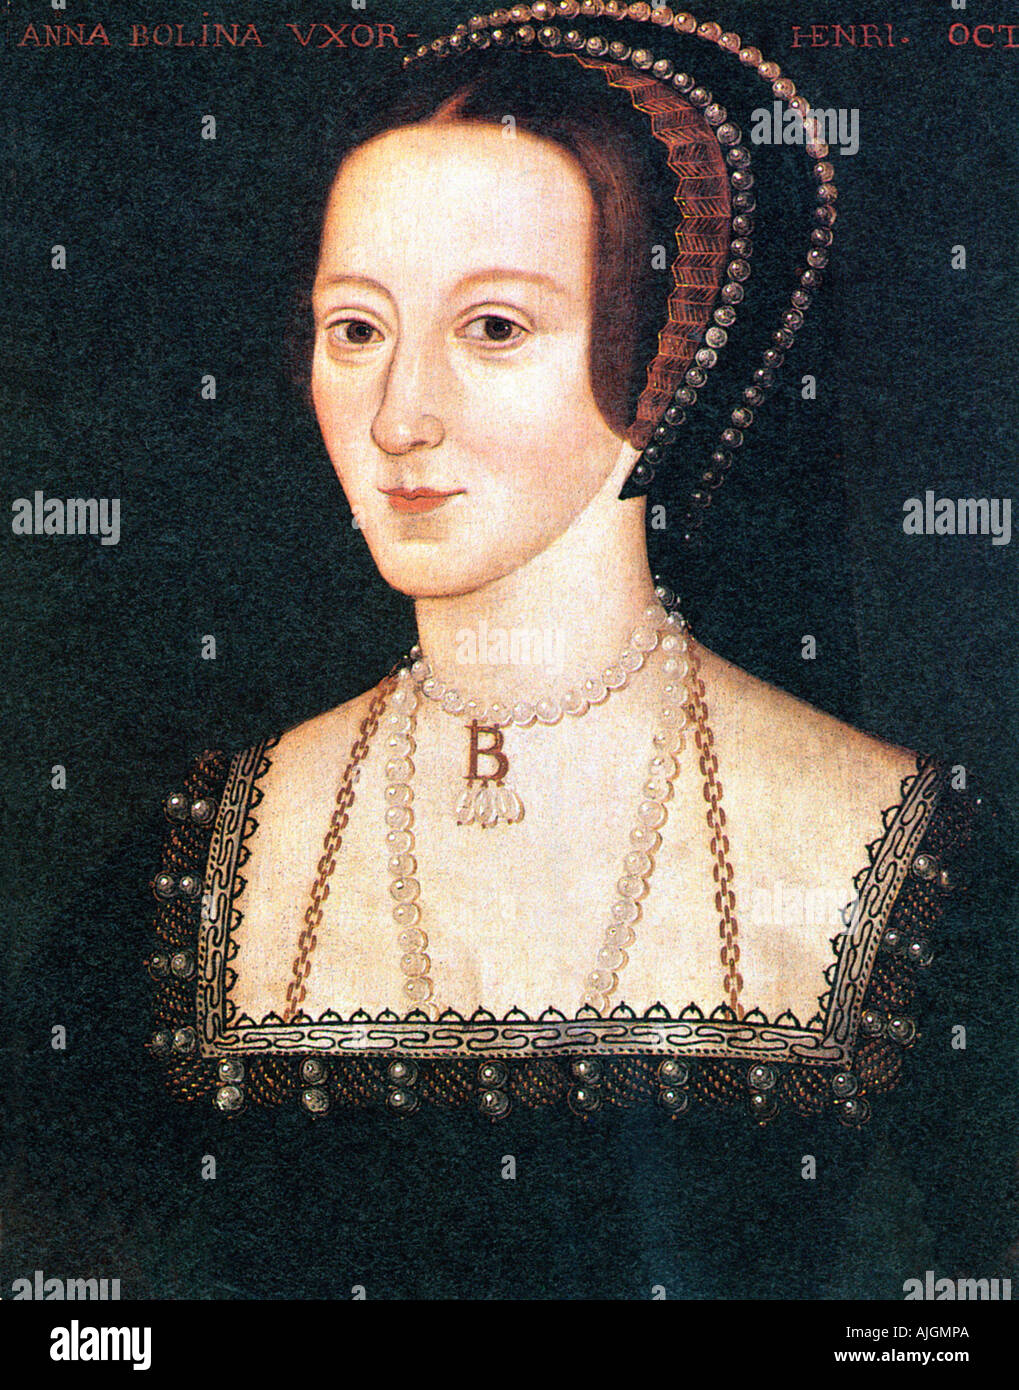 Anne Boleyn, 1533 portrait de la deuxième femme d'Henry VIII, malheureuse reine d'Angleterre décapité en 1536 Banque D'Images